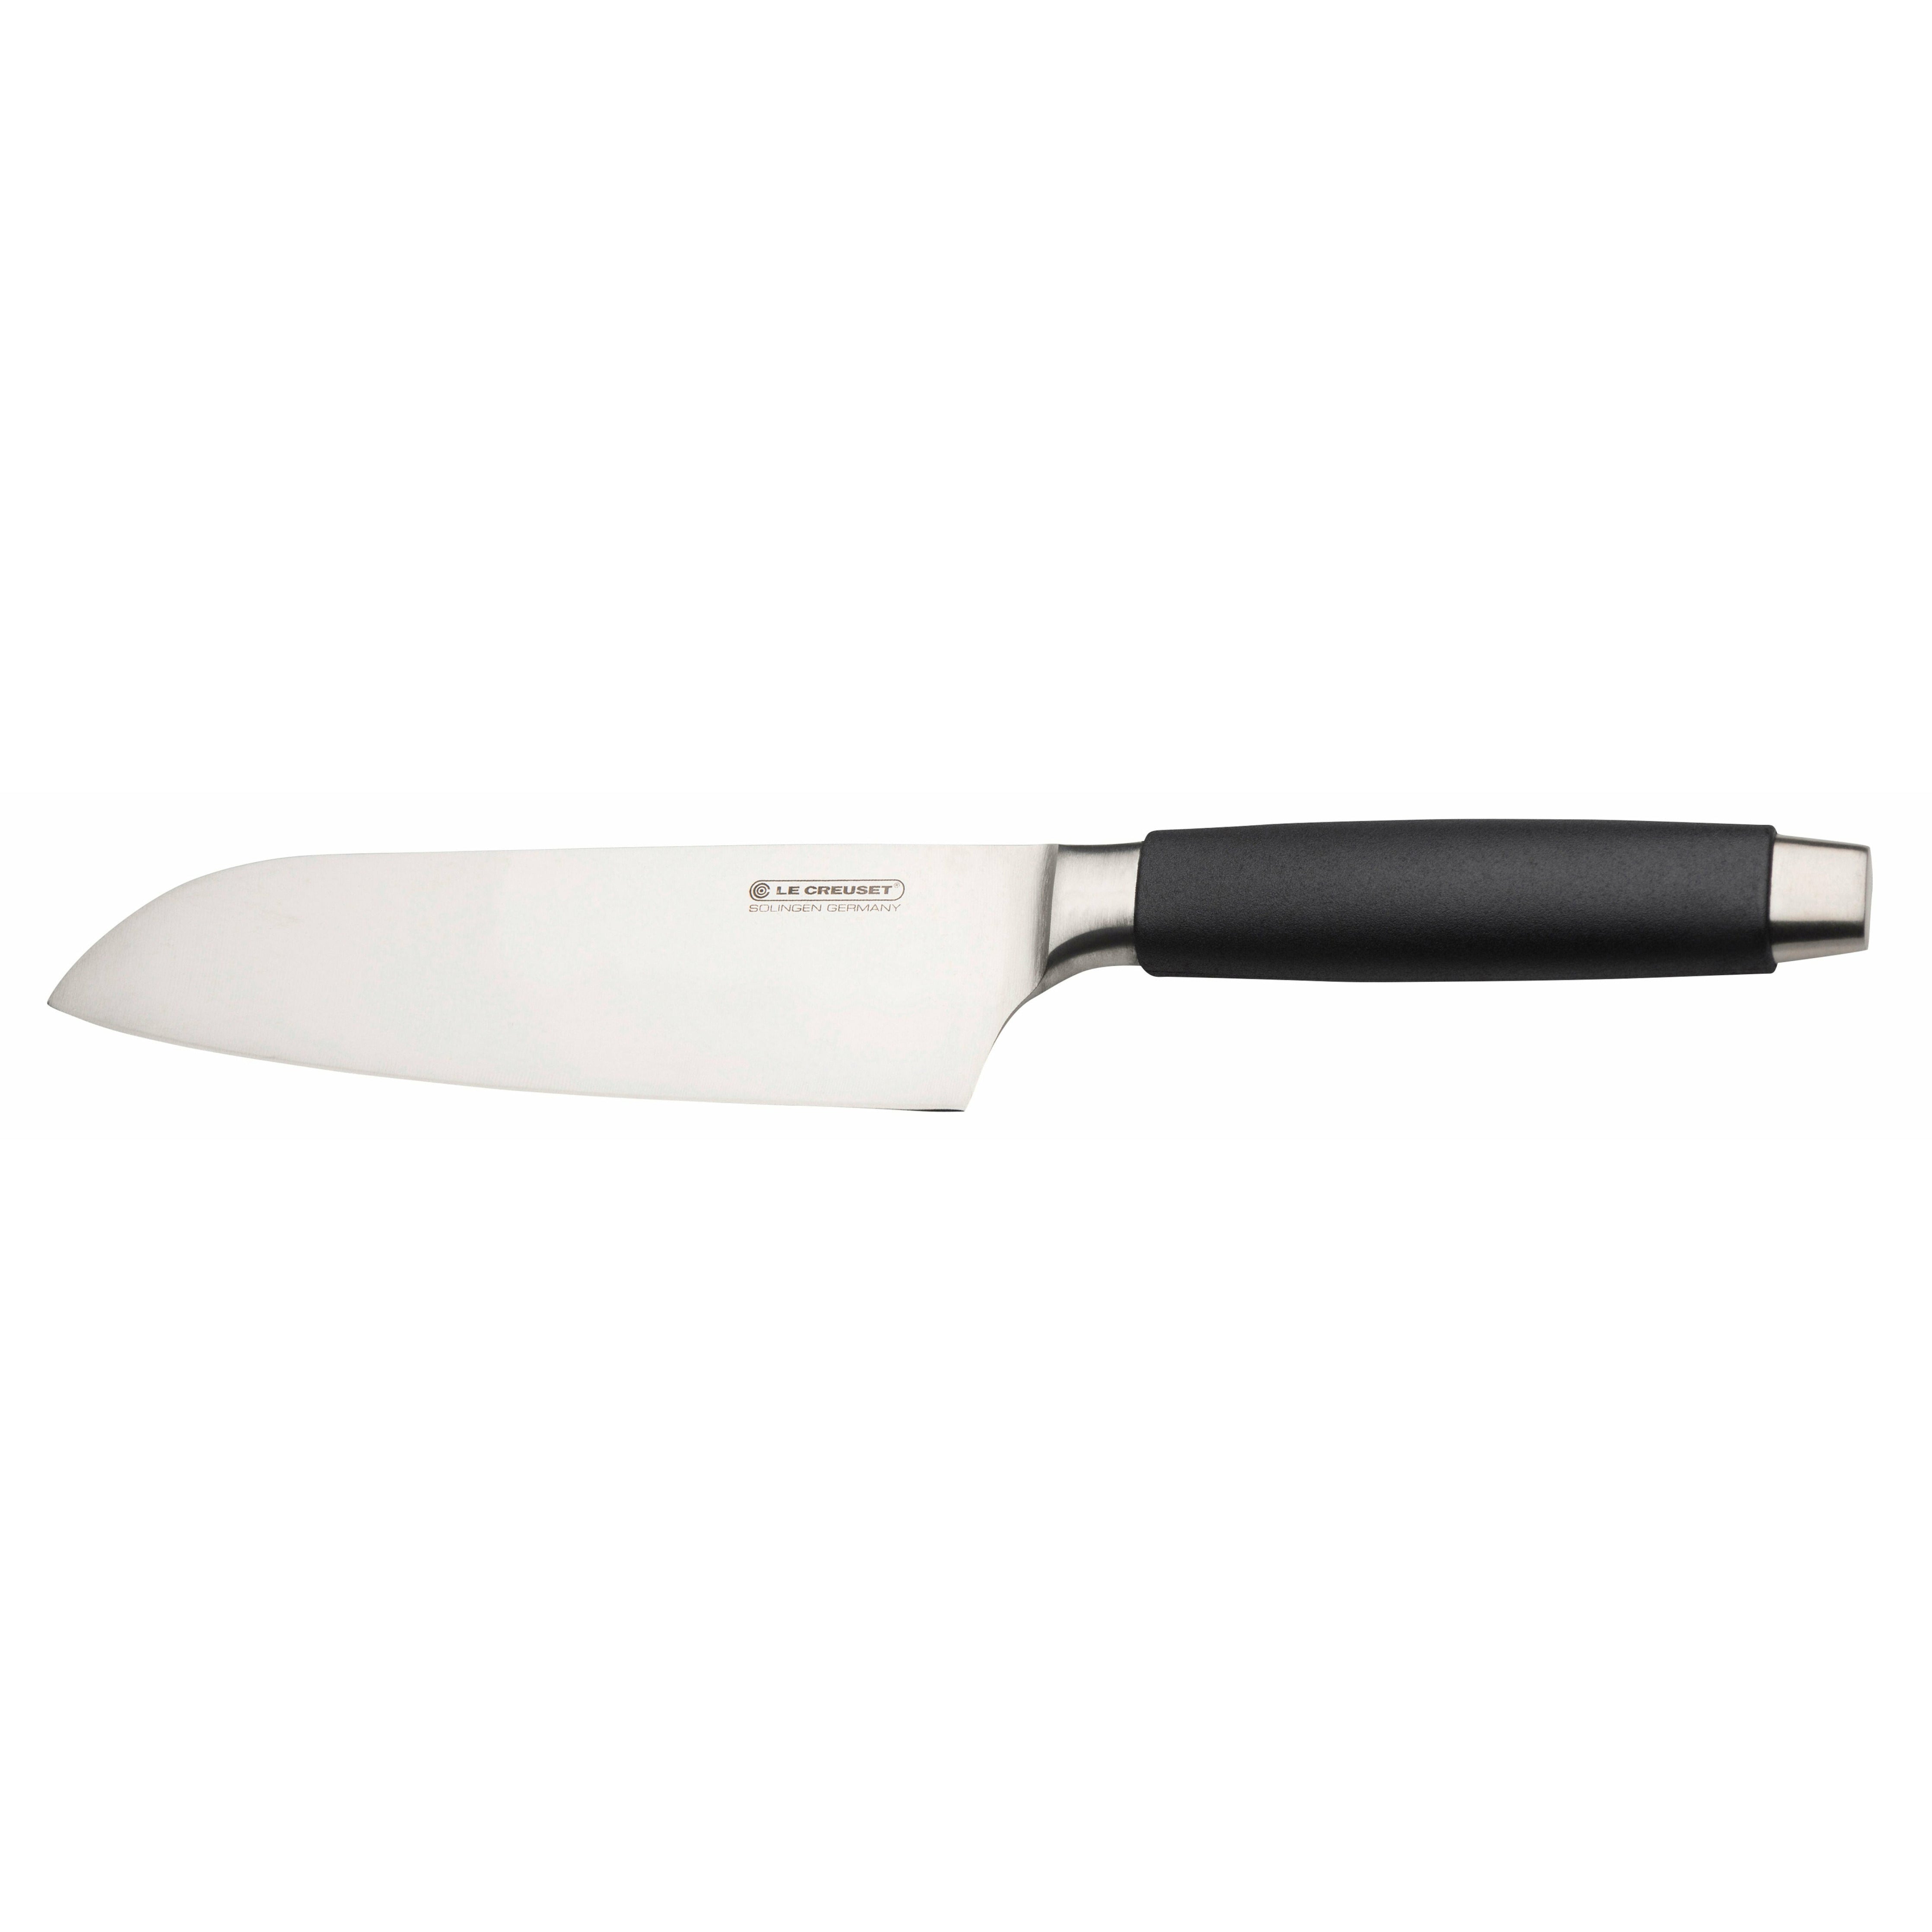 Standard di coltello Le Creuset Santoku con manico nero, 18 cm